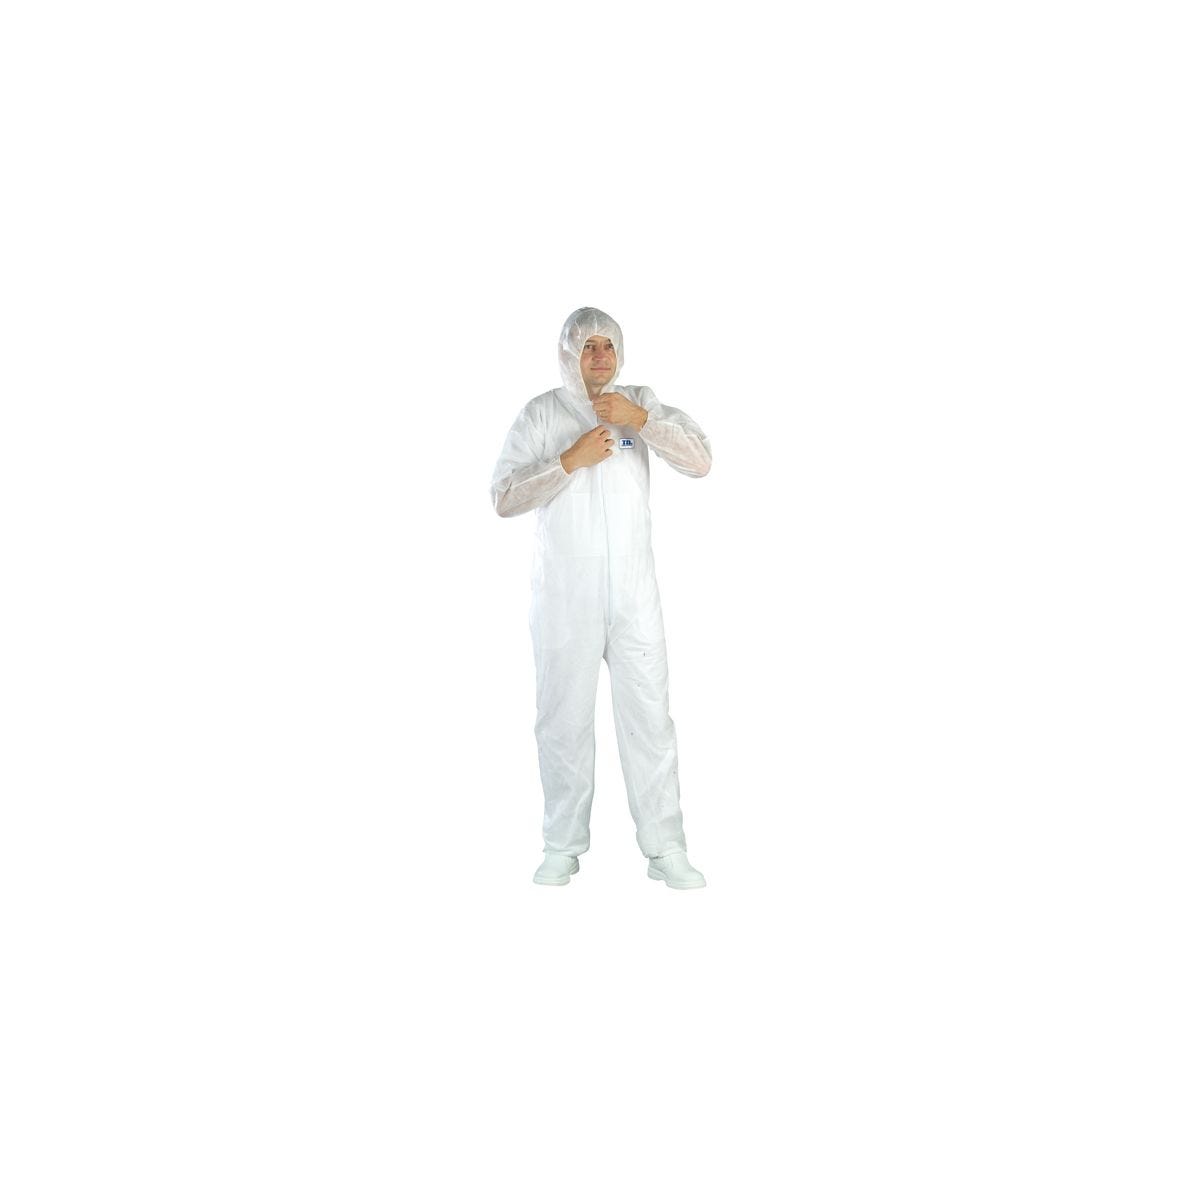 Combinaison SPP 40g/m² blanc avec capuche - COVERGUARD - Taille XL 0